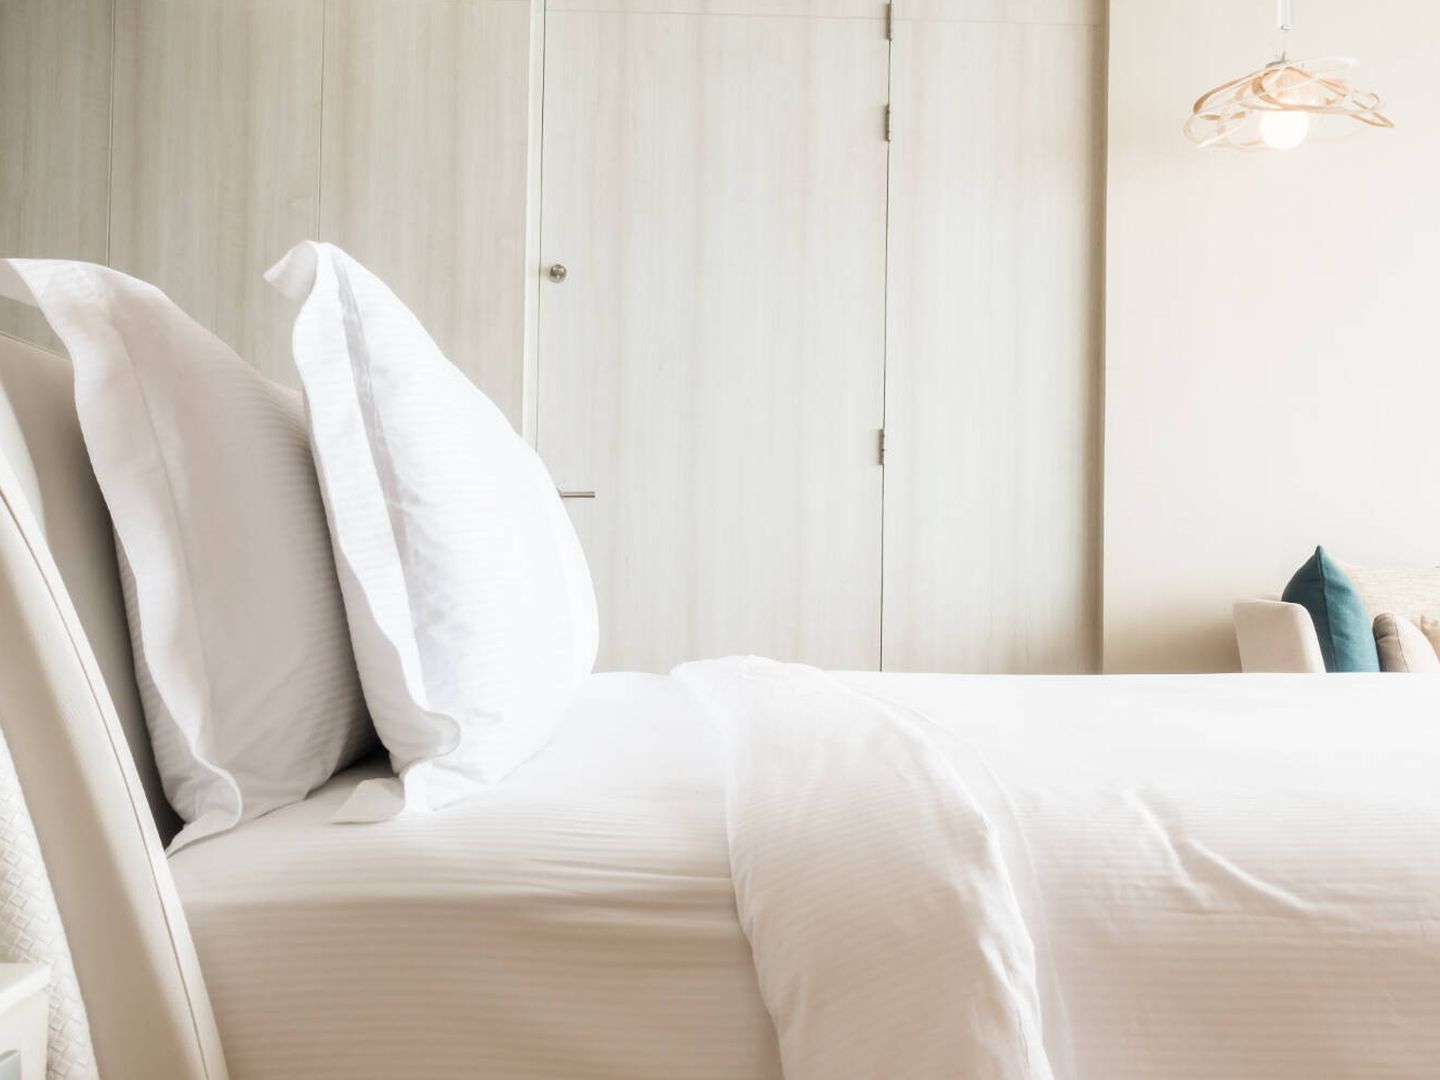 La ropa de cama y el colchón pueden contener bacterias, insectos y restos de virus (mrsiraphol para Freepik)